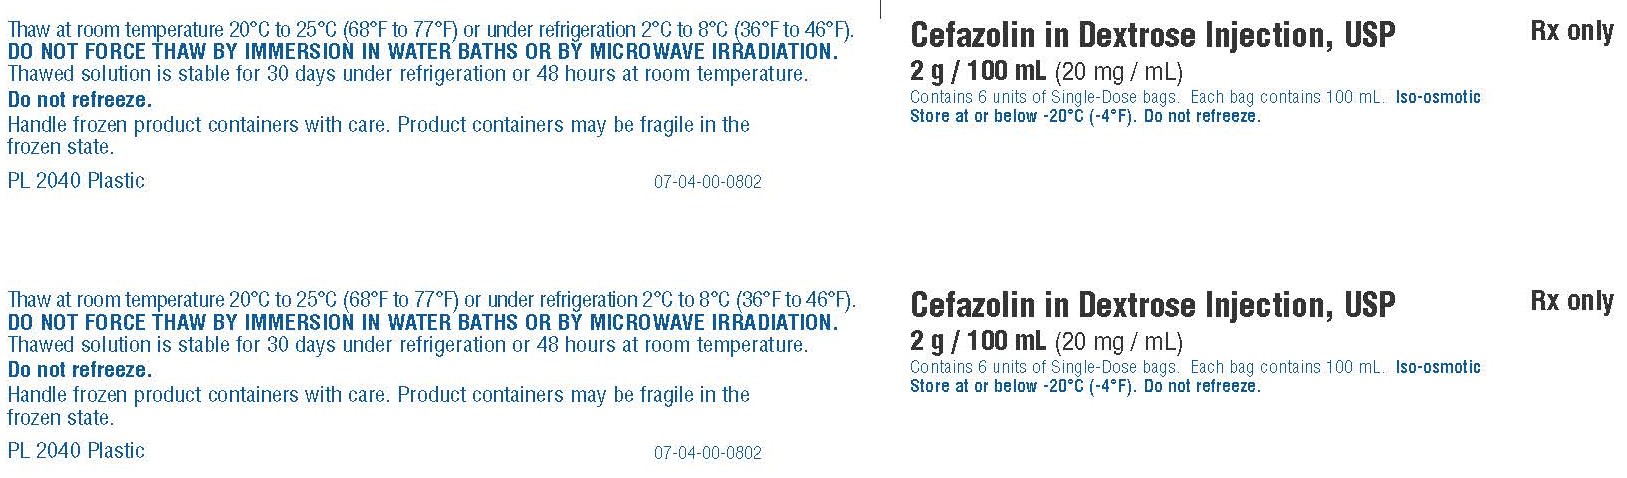 Representative Cefazolin Carton Label 0338-3508-41  1 of 2